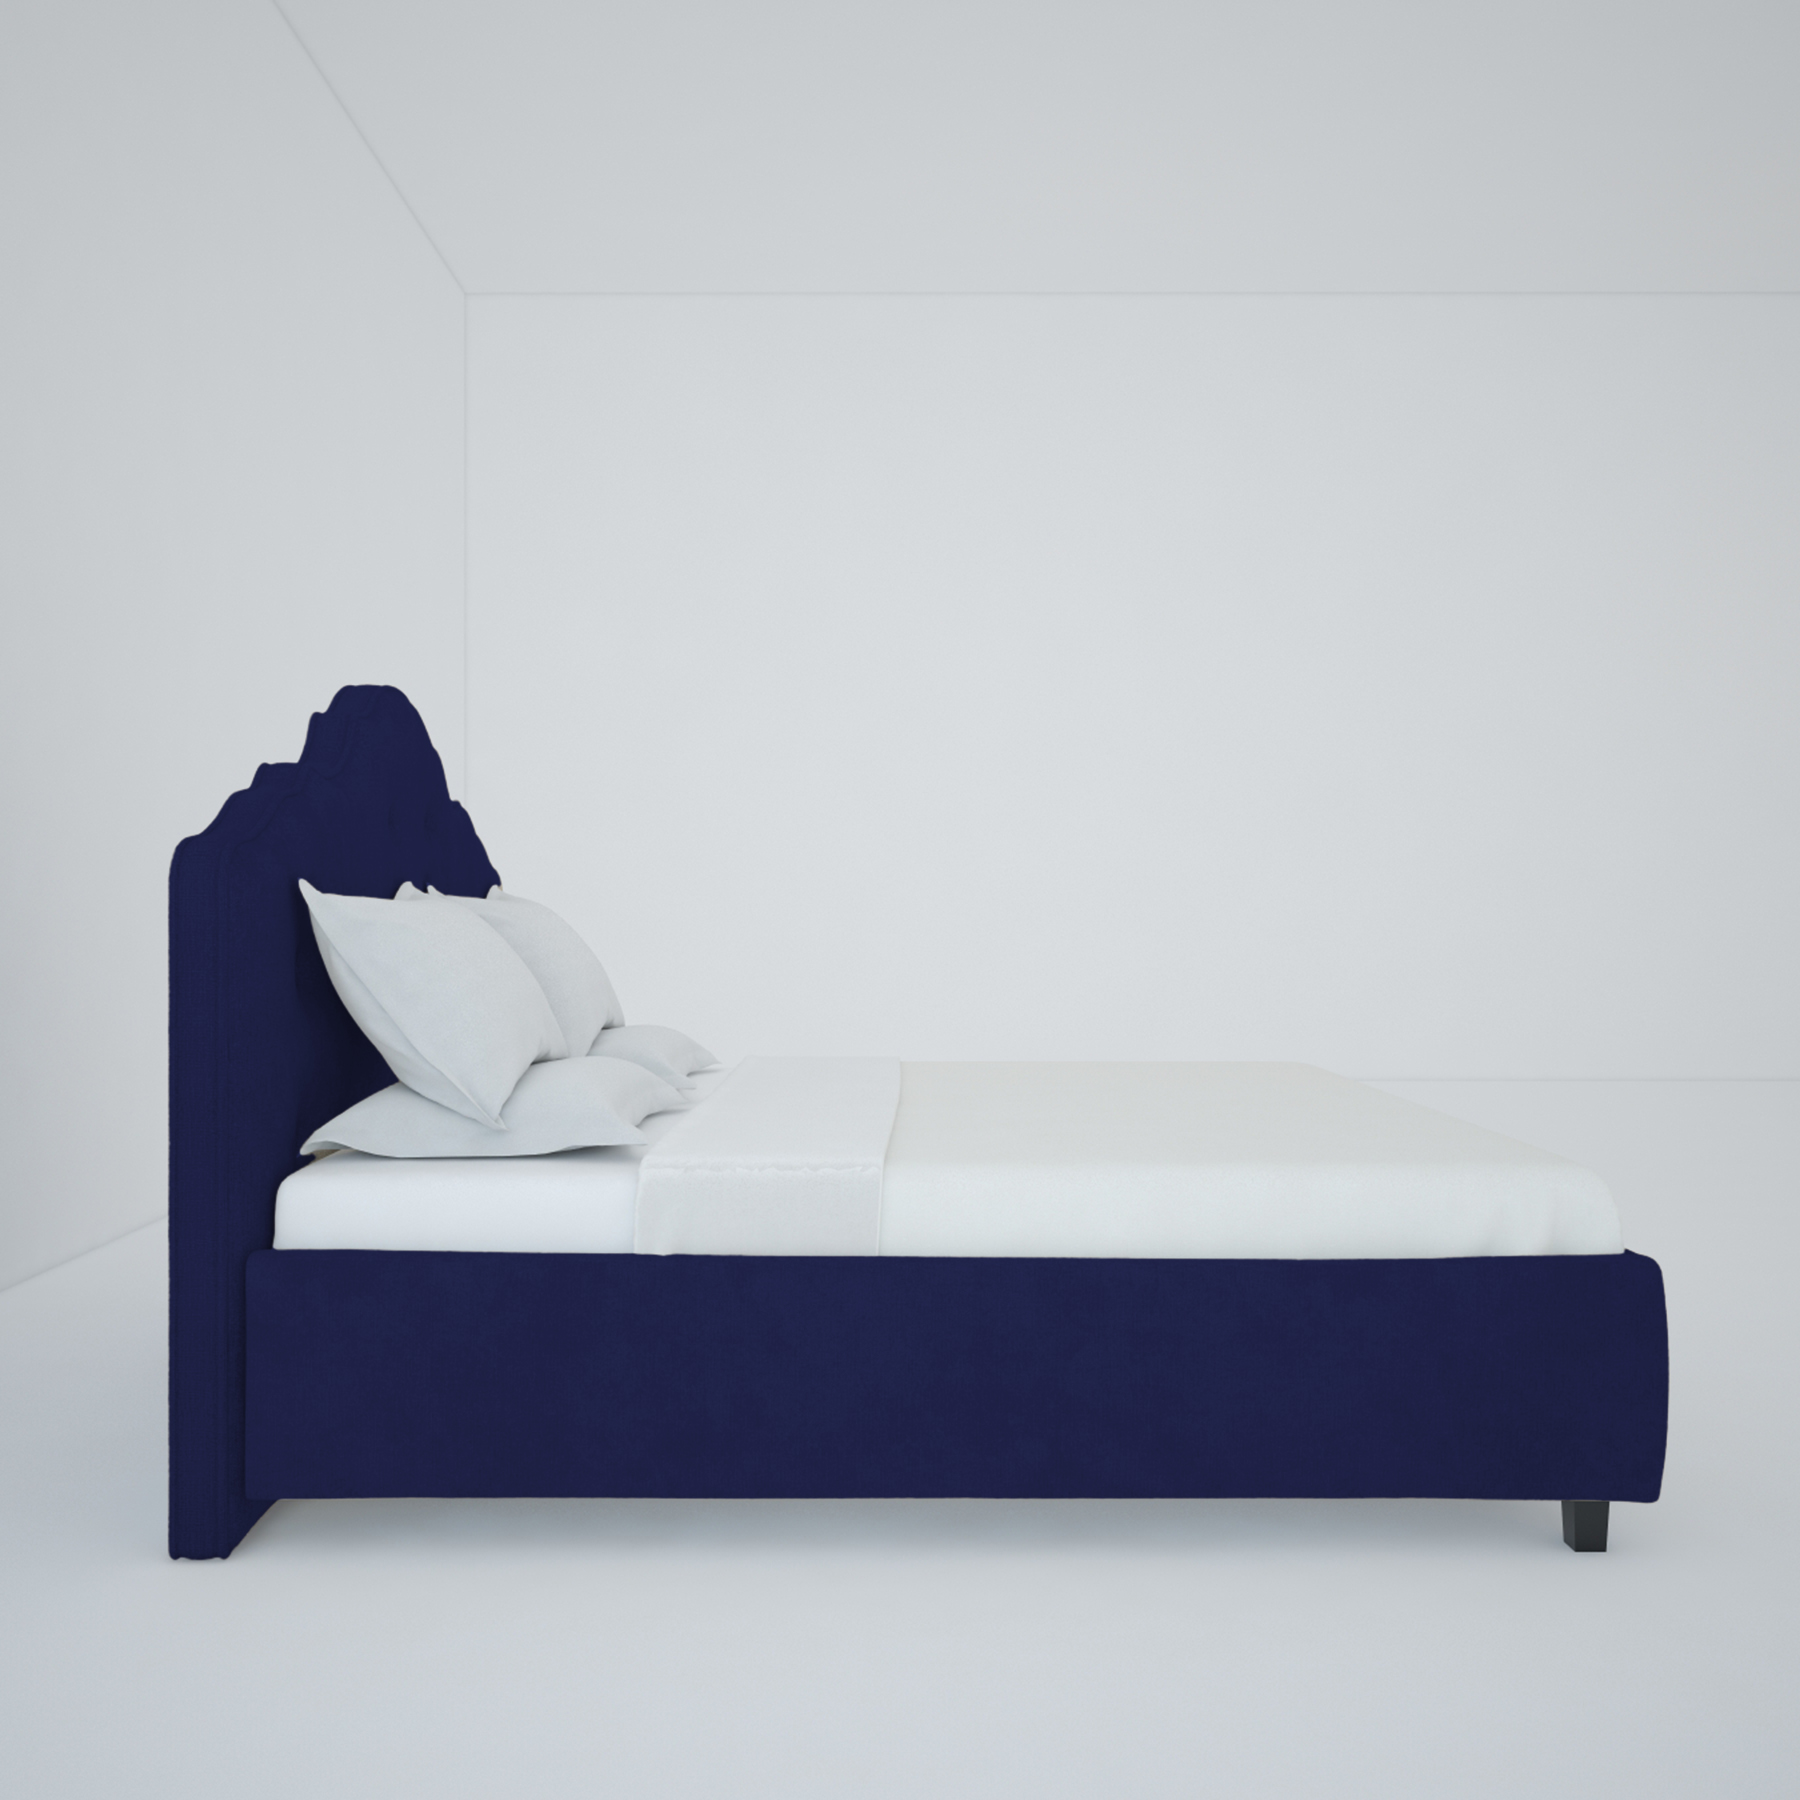 Куплю кровать сон ру. Palace кровать DG Home. Кровать Royal 160 x 200 см. Кровать DG-Home ами 146x109x207 см цвет темно-синий. Кровать односпальная синяя.